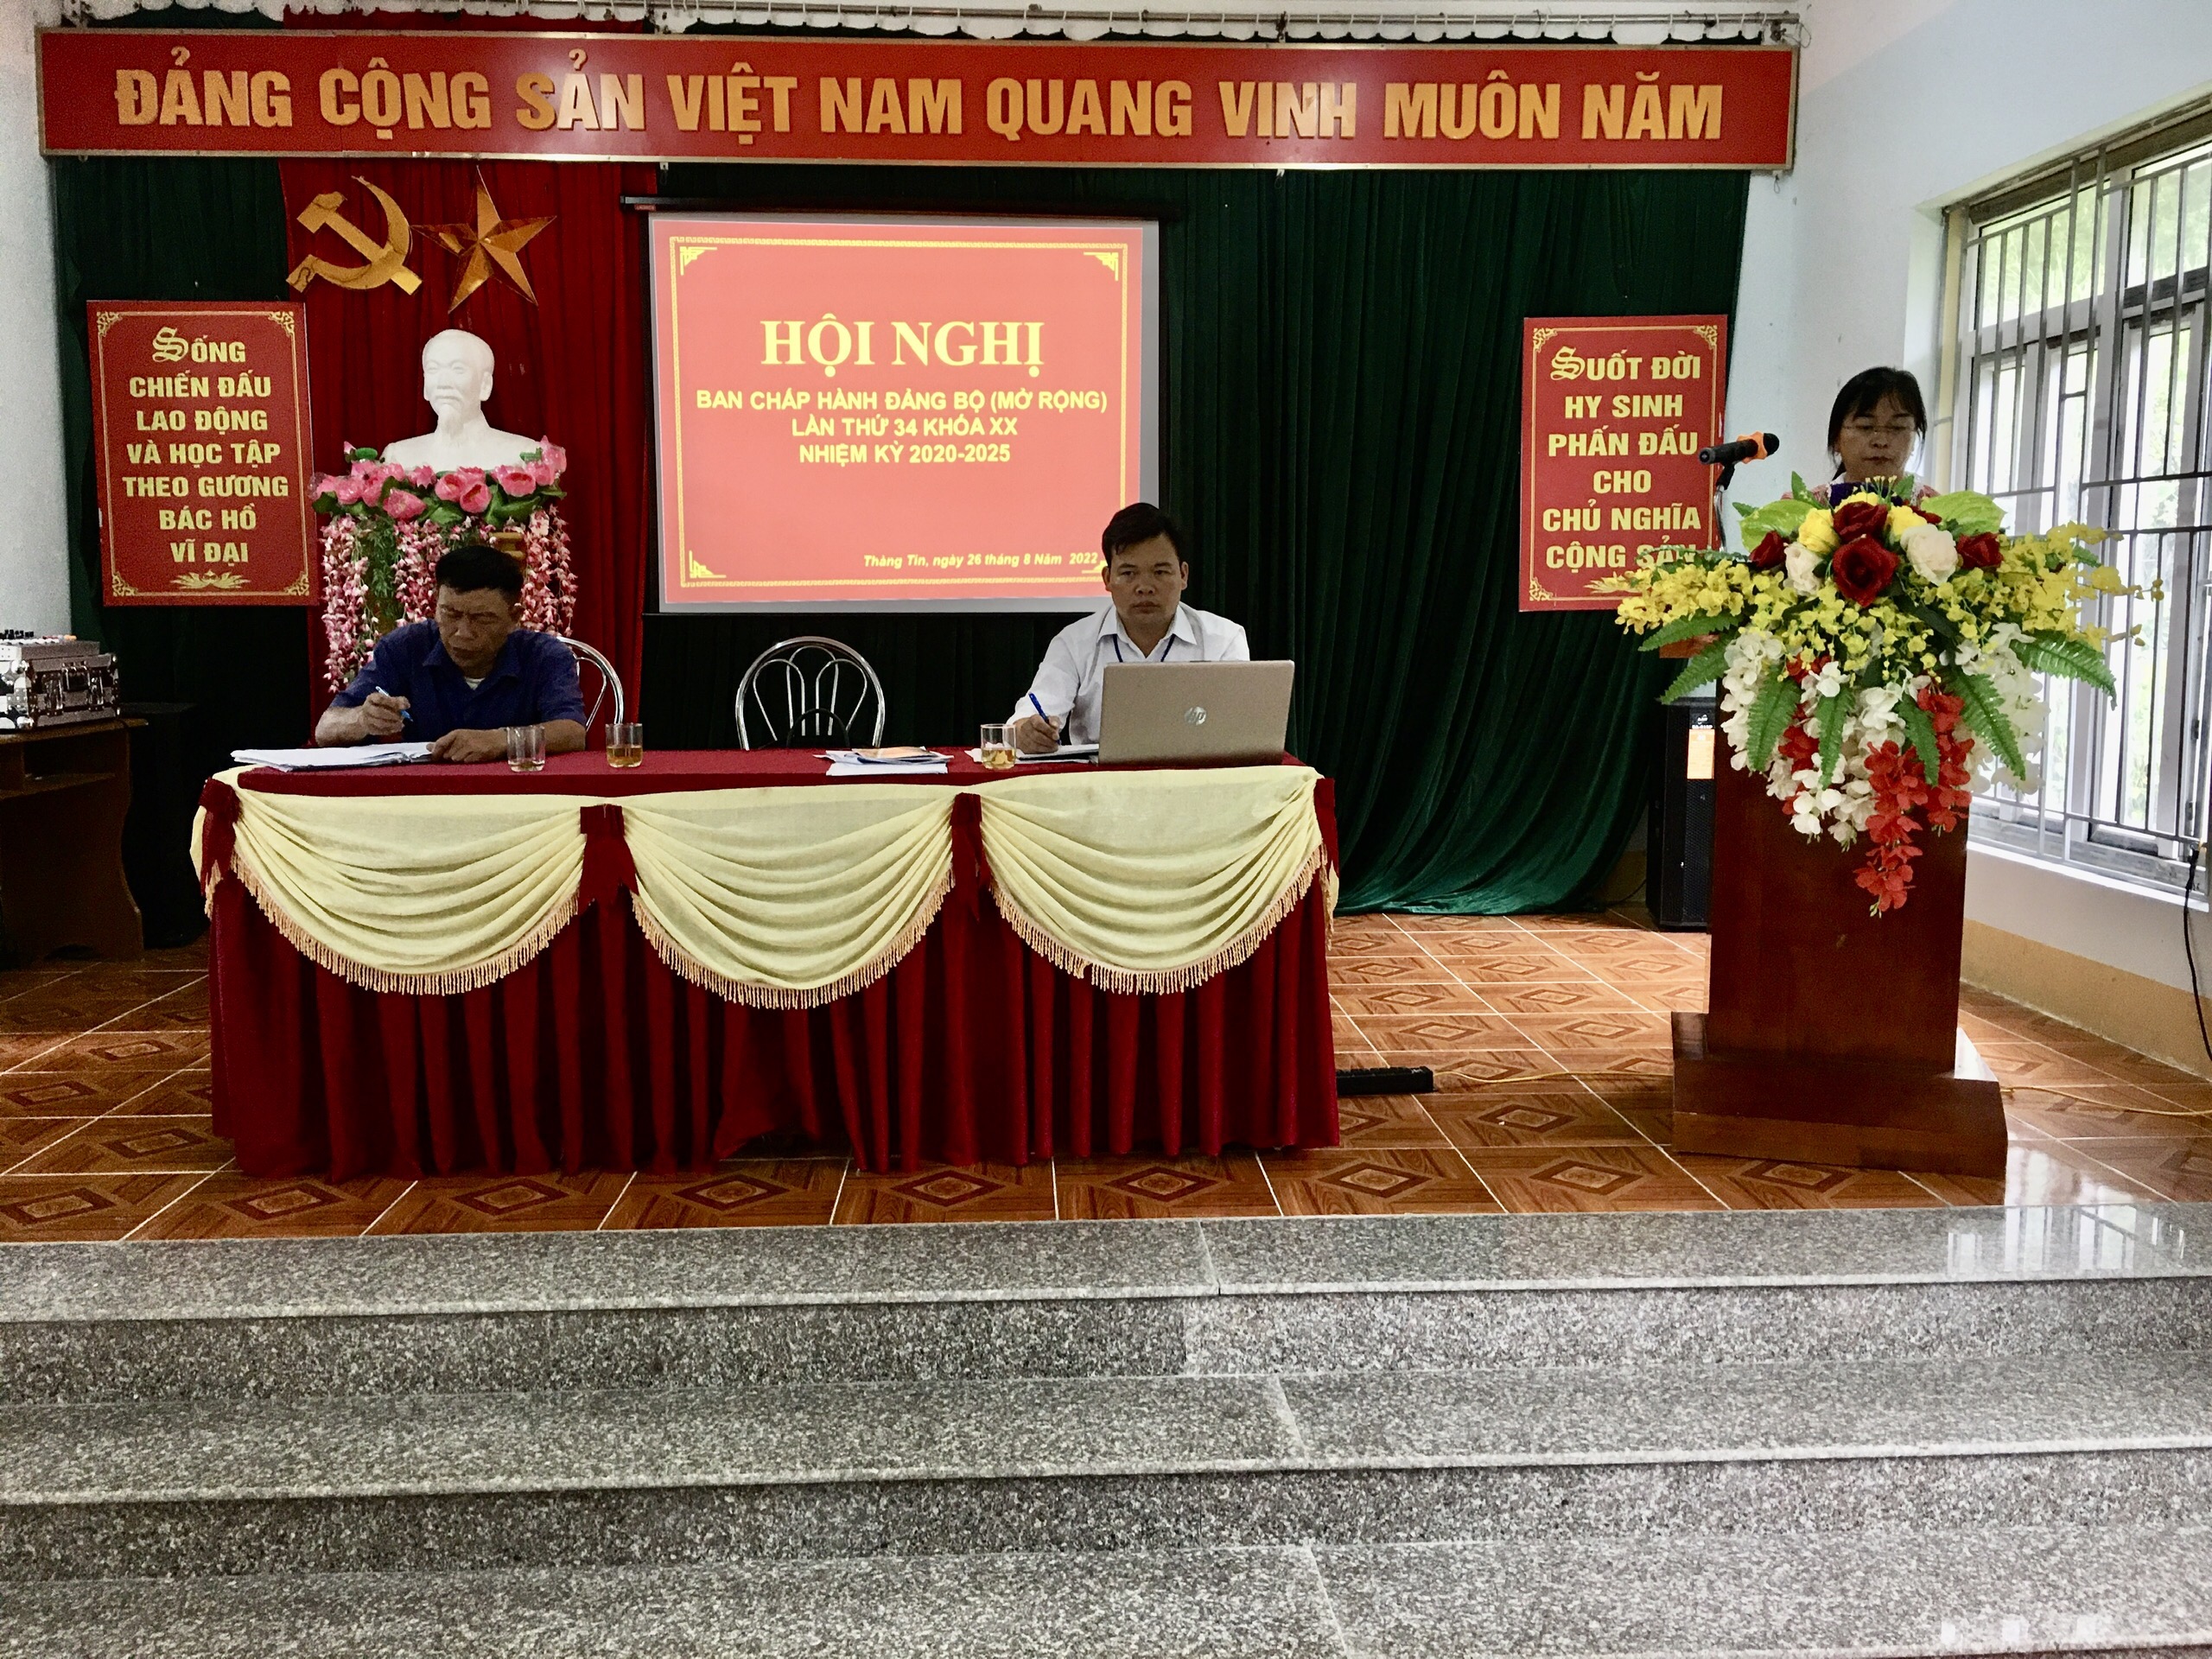 Xã Thàng Tín tổ chức Hội nghị BCH Đảng bộ xã lần thứ 34 nhiệm kỳ 2020 - 2025